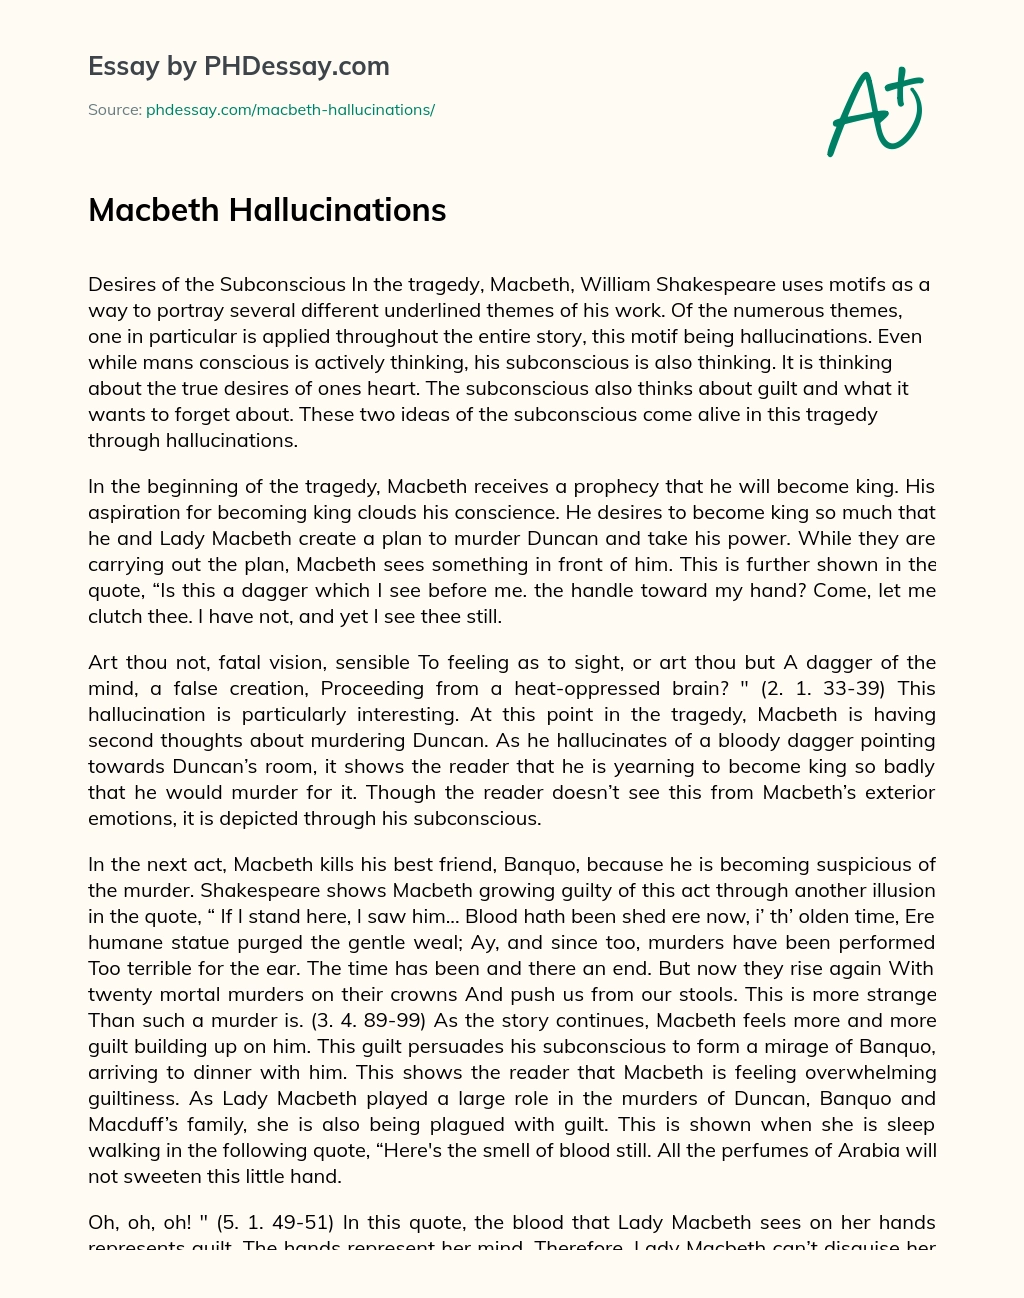 Macbeth Hallucinations essay